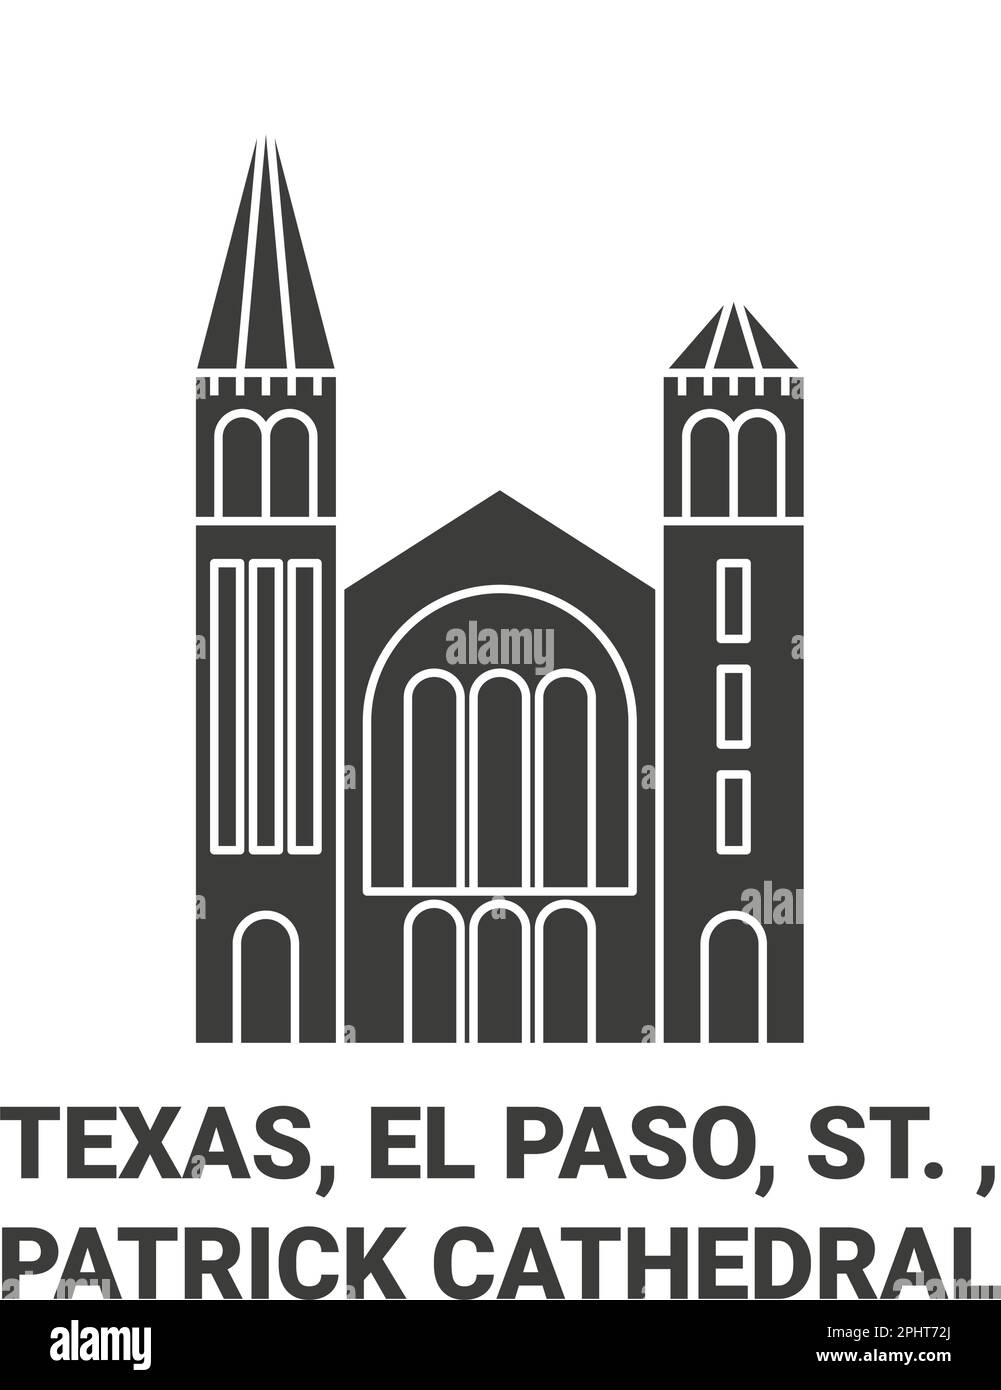 États-Unis, Texas, El Paso, St. , Illustration du vecteur de repère de voyage de la cathédrale de Patrick Illustration de Vecteur